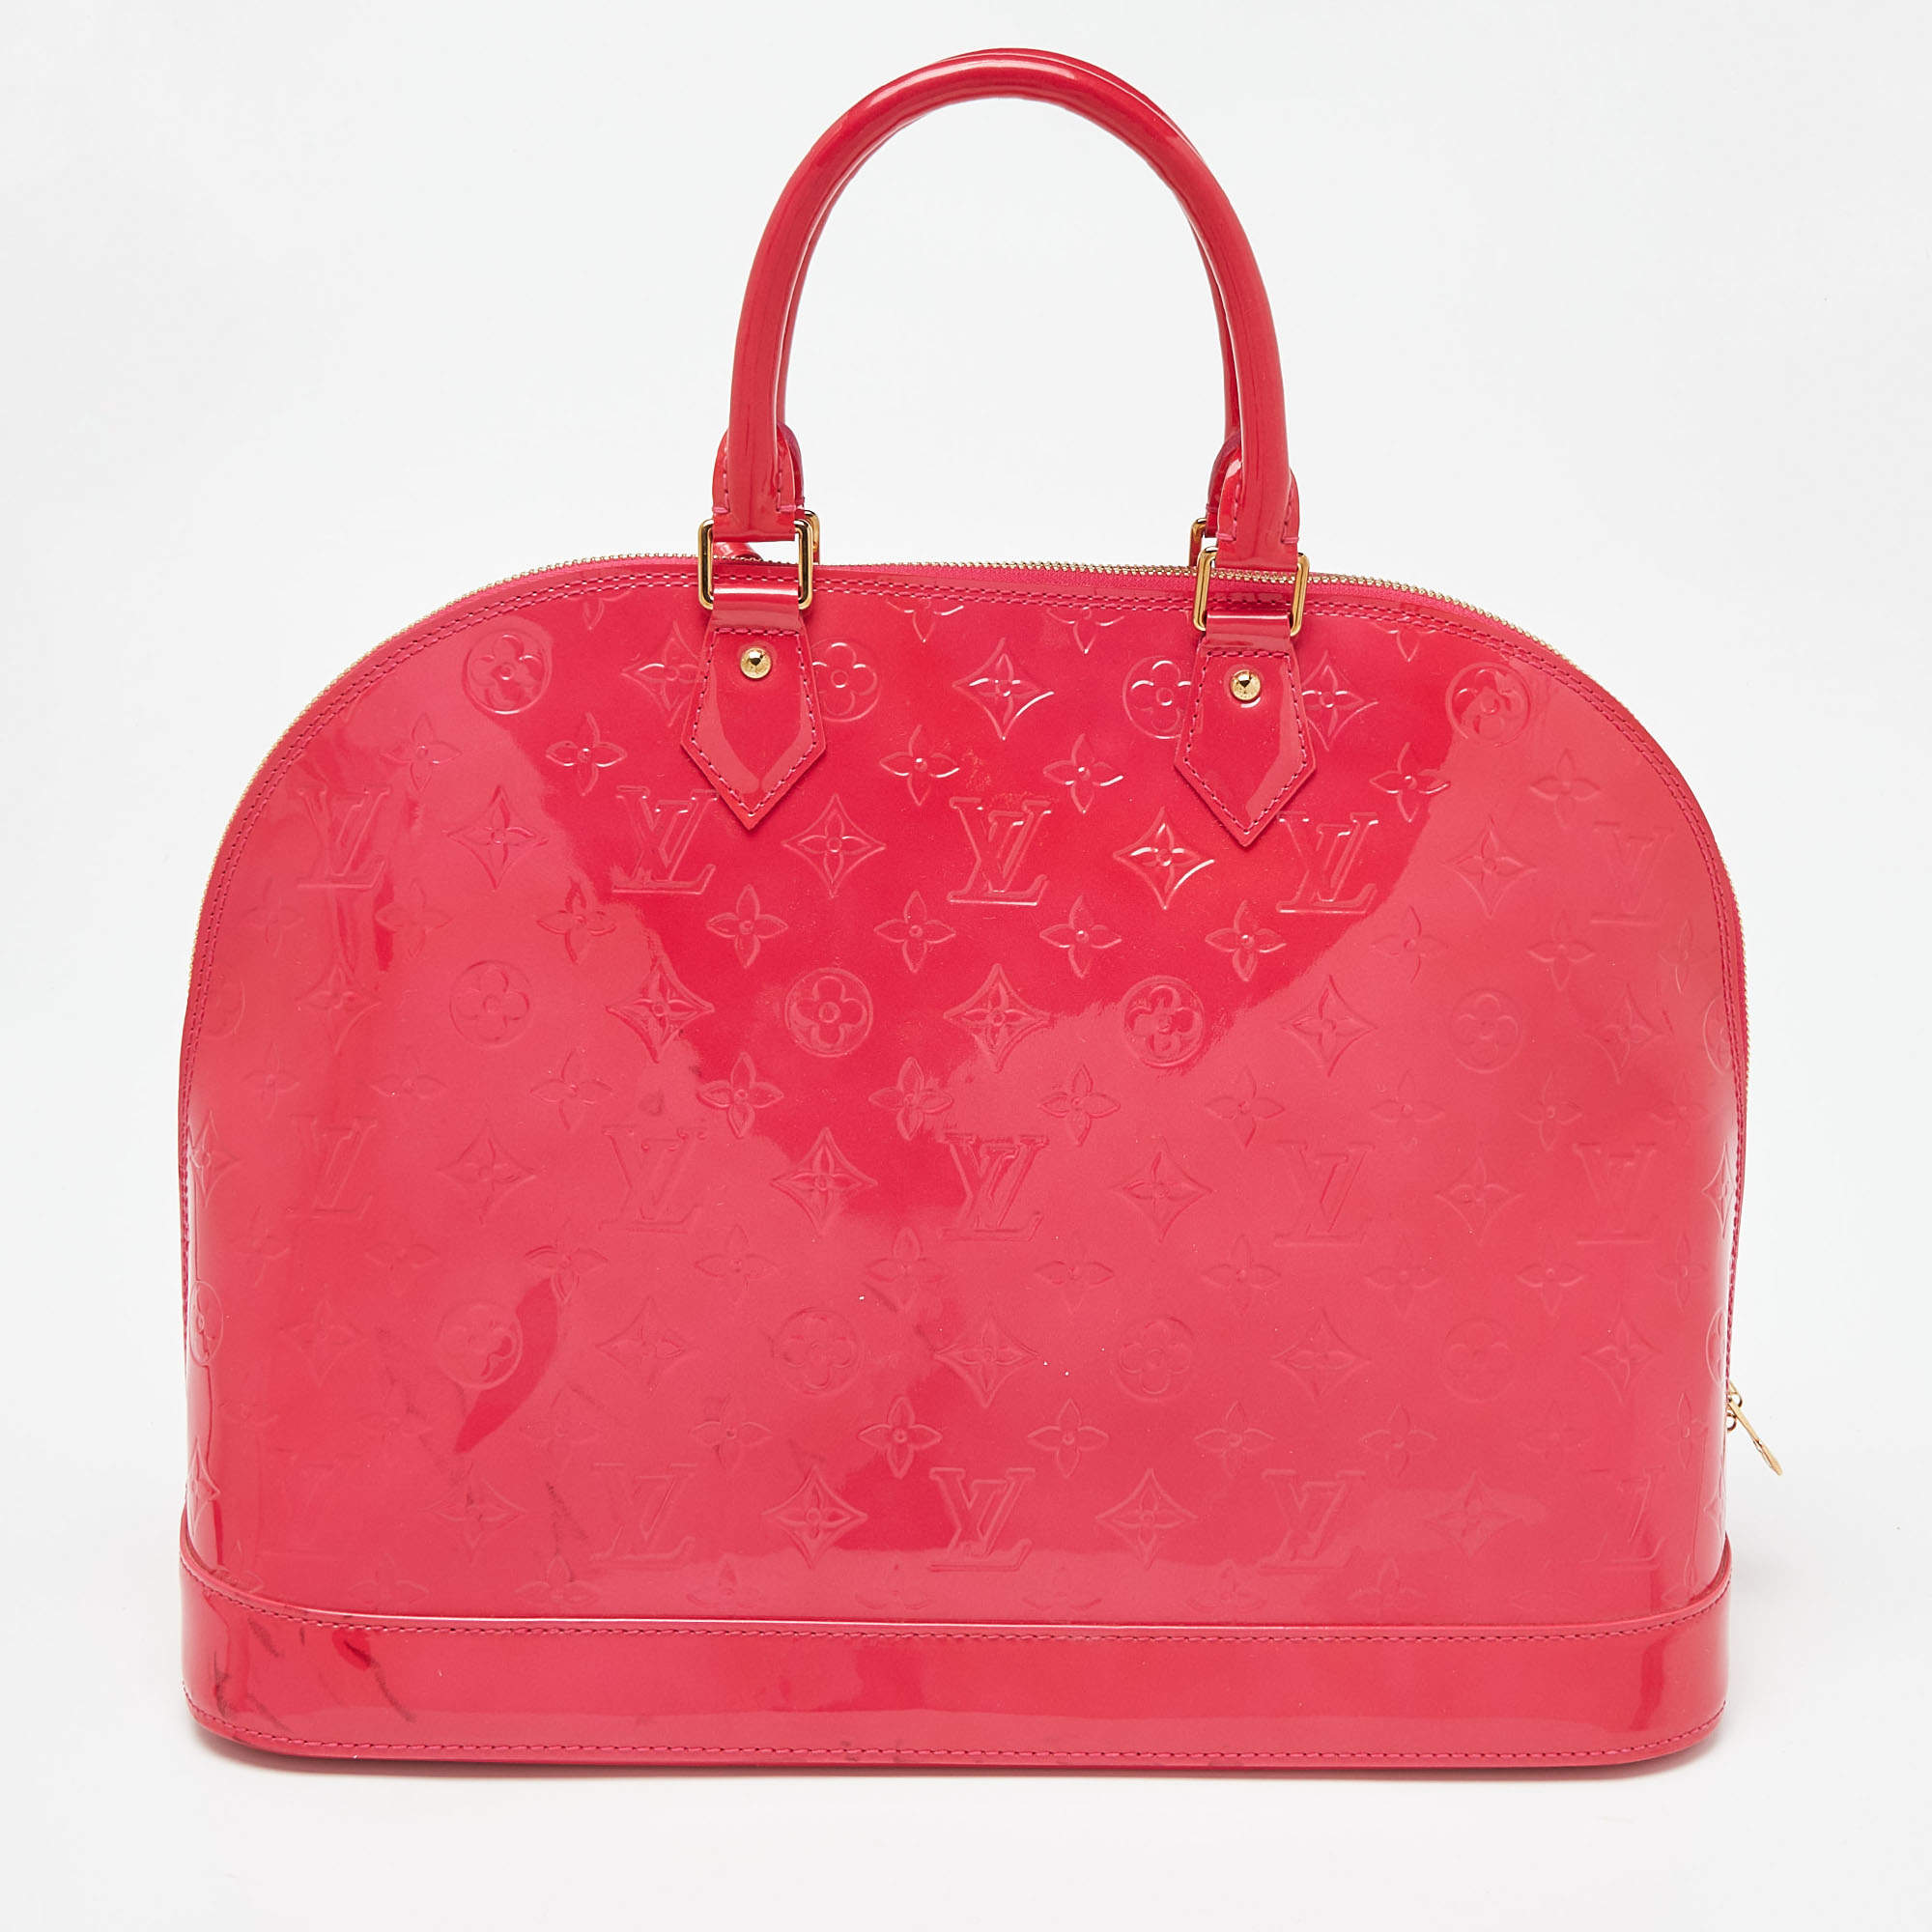 Louis Vuitton, Bags, Louis Vuitton Bag Red Gm Vernis Authentic